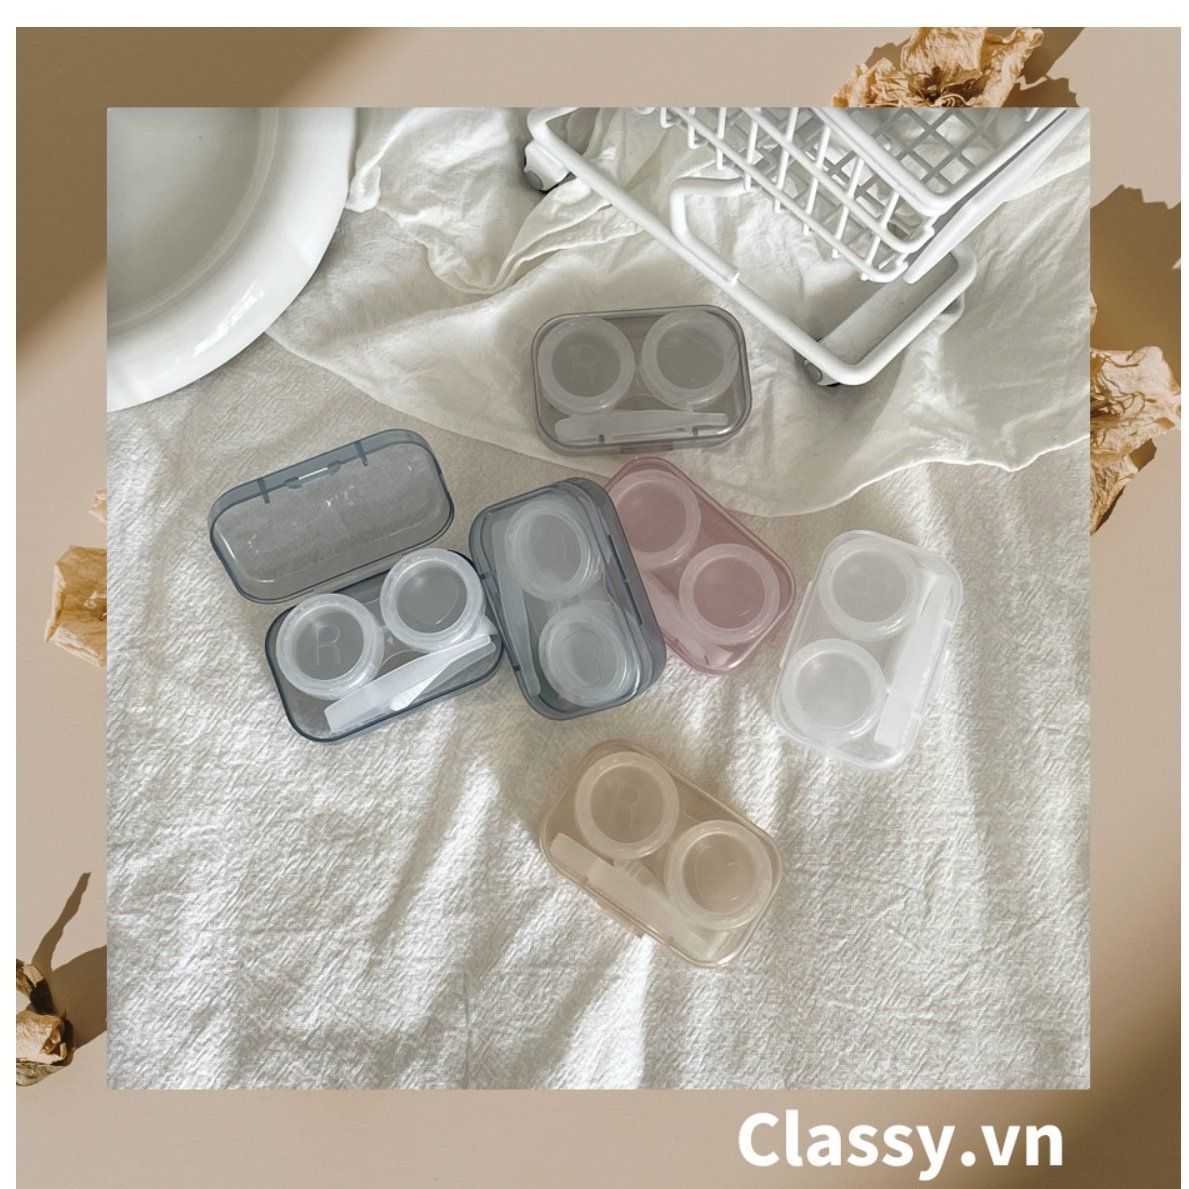 Hộp đựng kính áp tròng đơn sắc tối giản màu be dành cho các bạn nữ yêu thích style minimalism PK1821